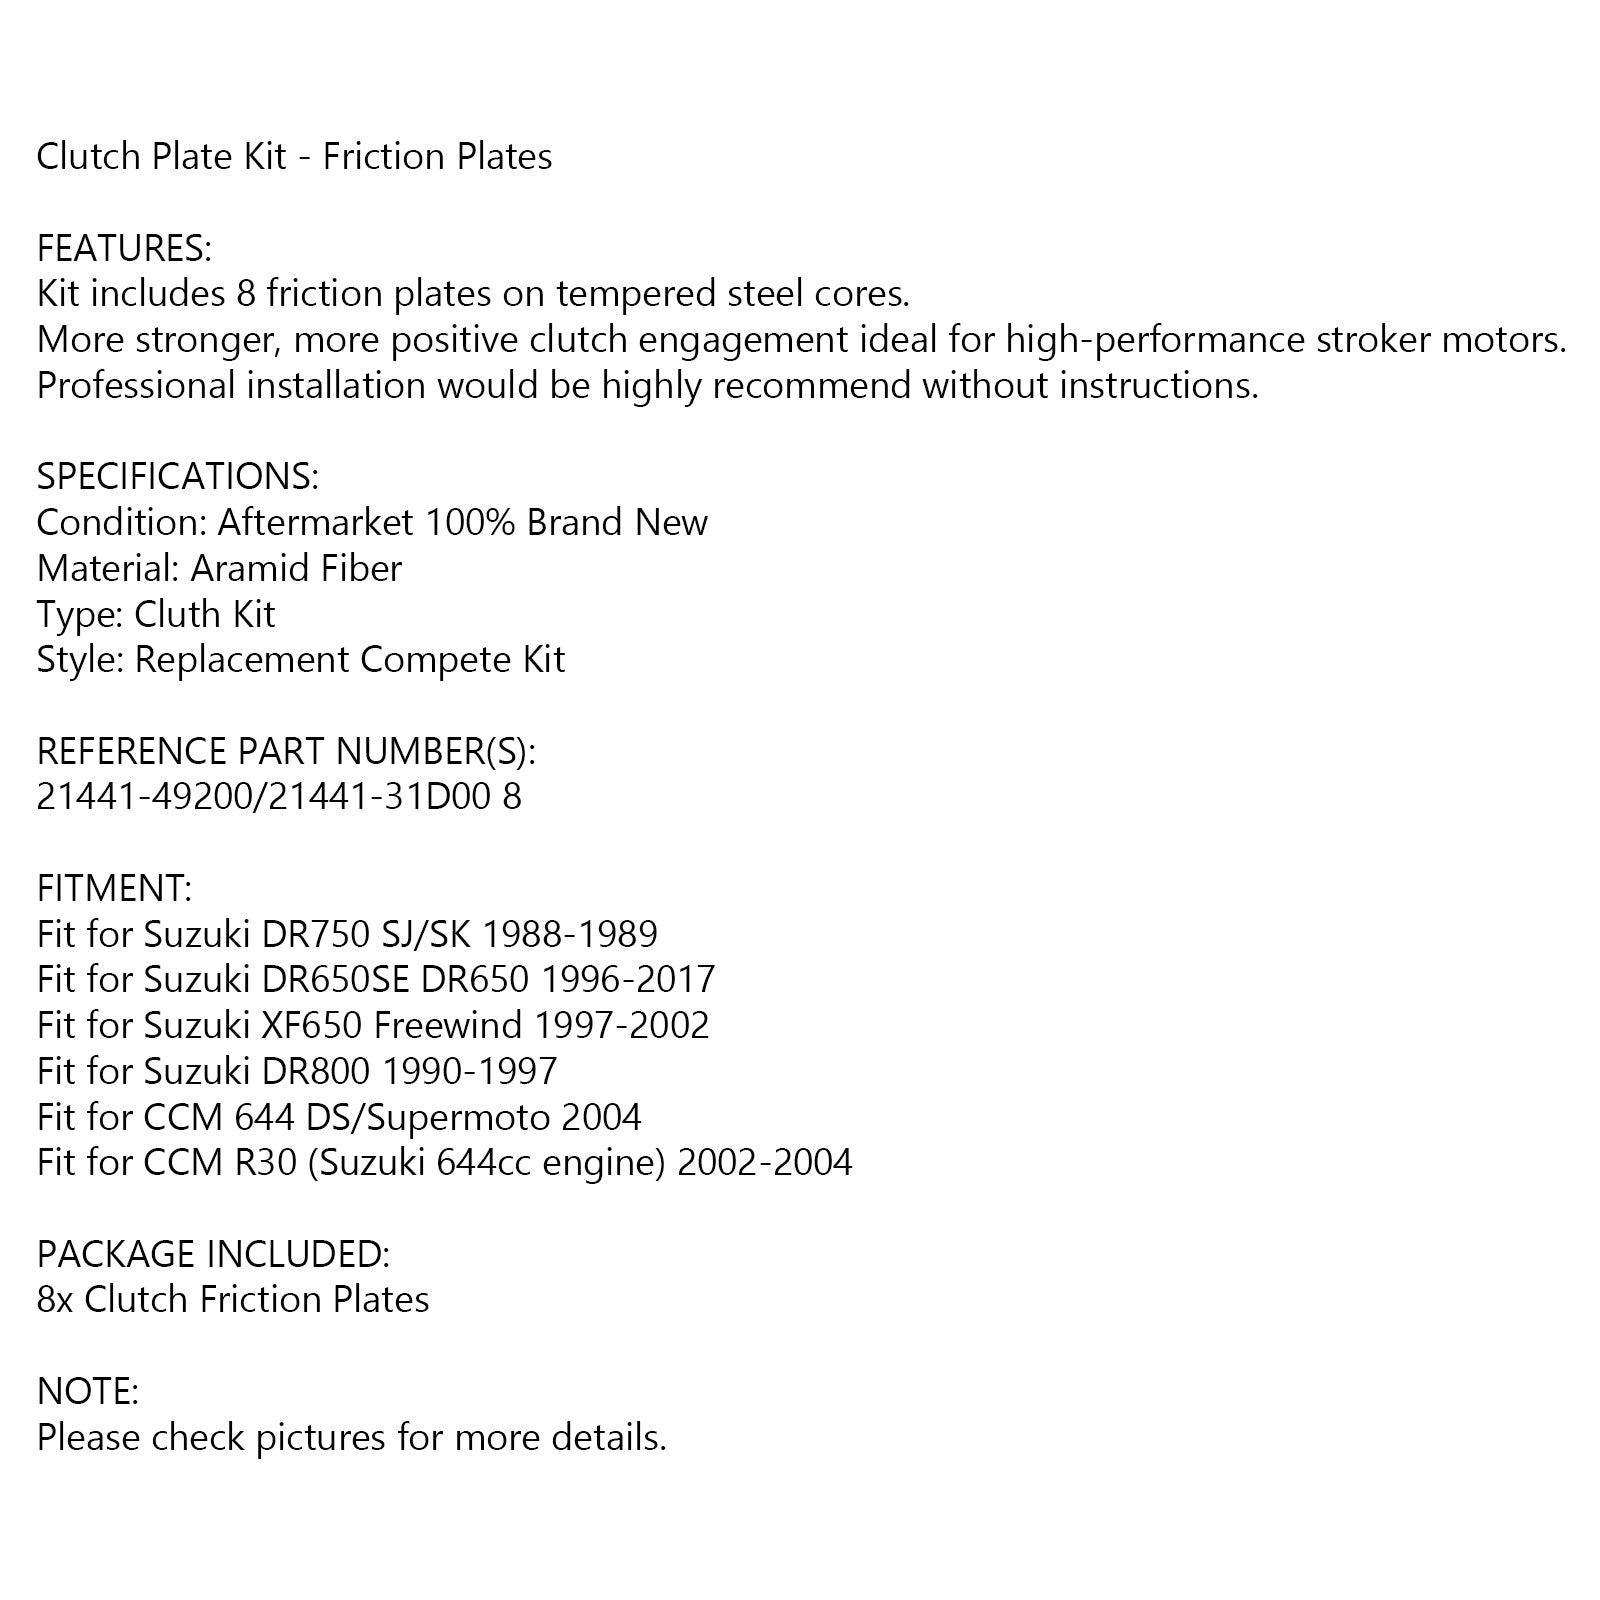 Clutch Friction Plate Kit Set For Suzuki DR750 SJ/SK DR650 DR800 CCM 644 R30